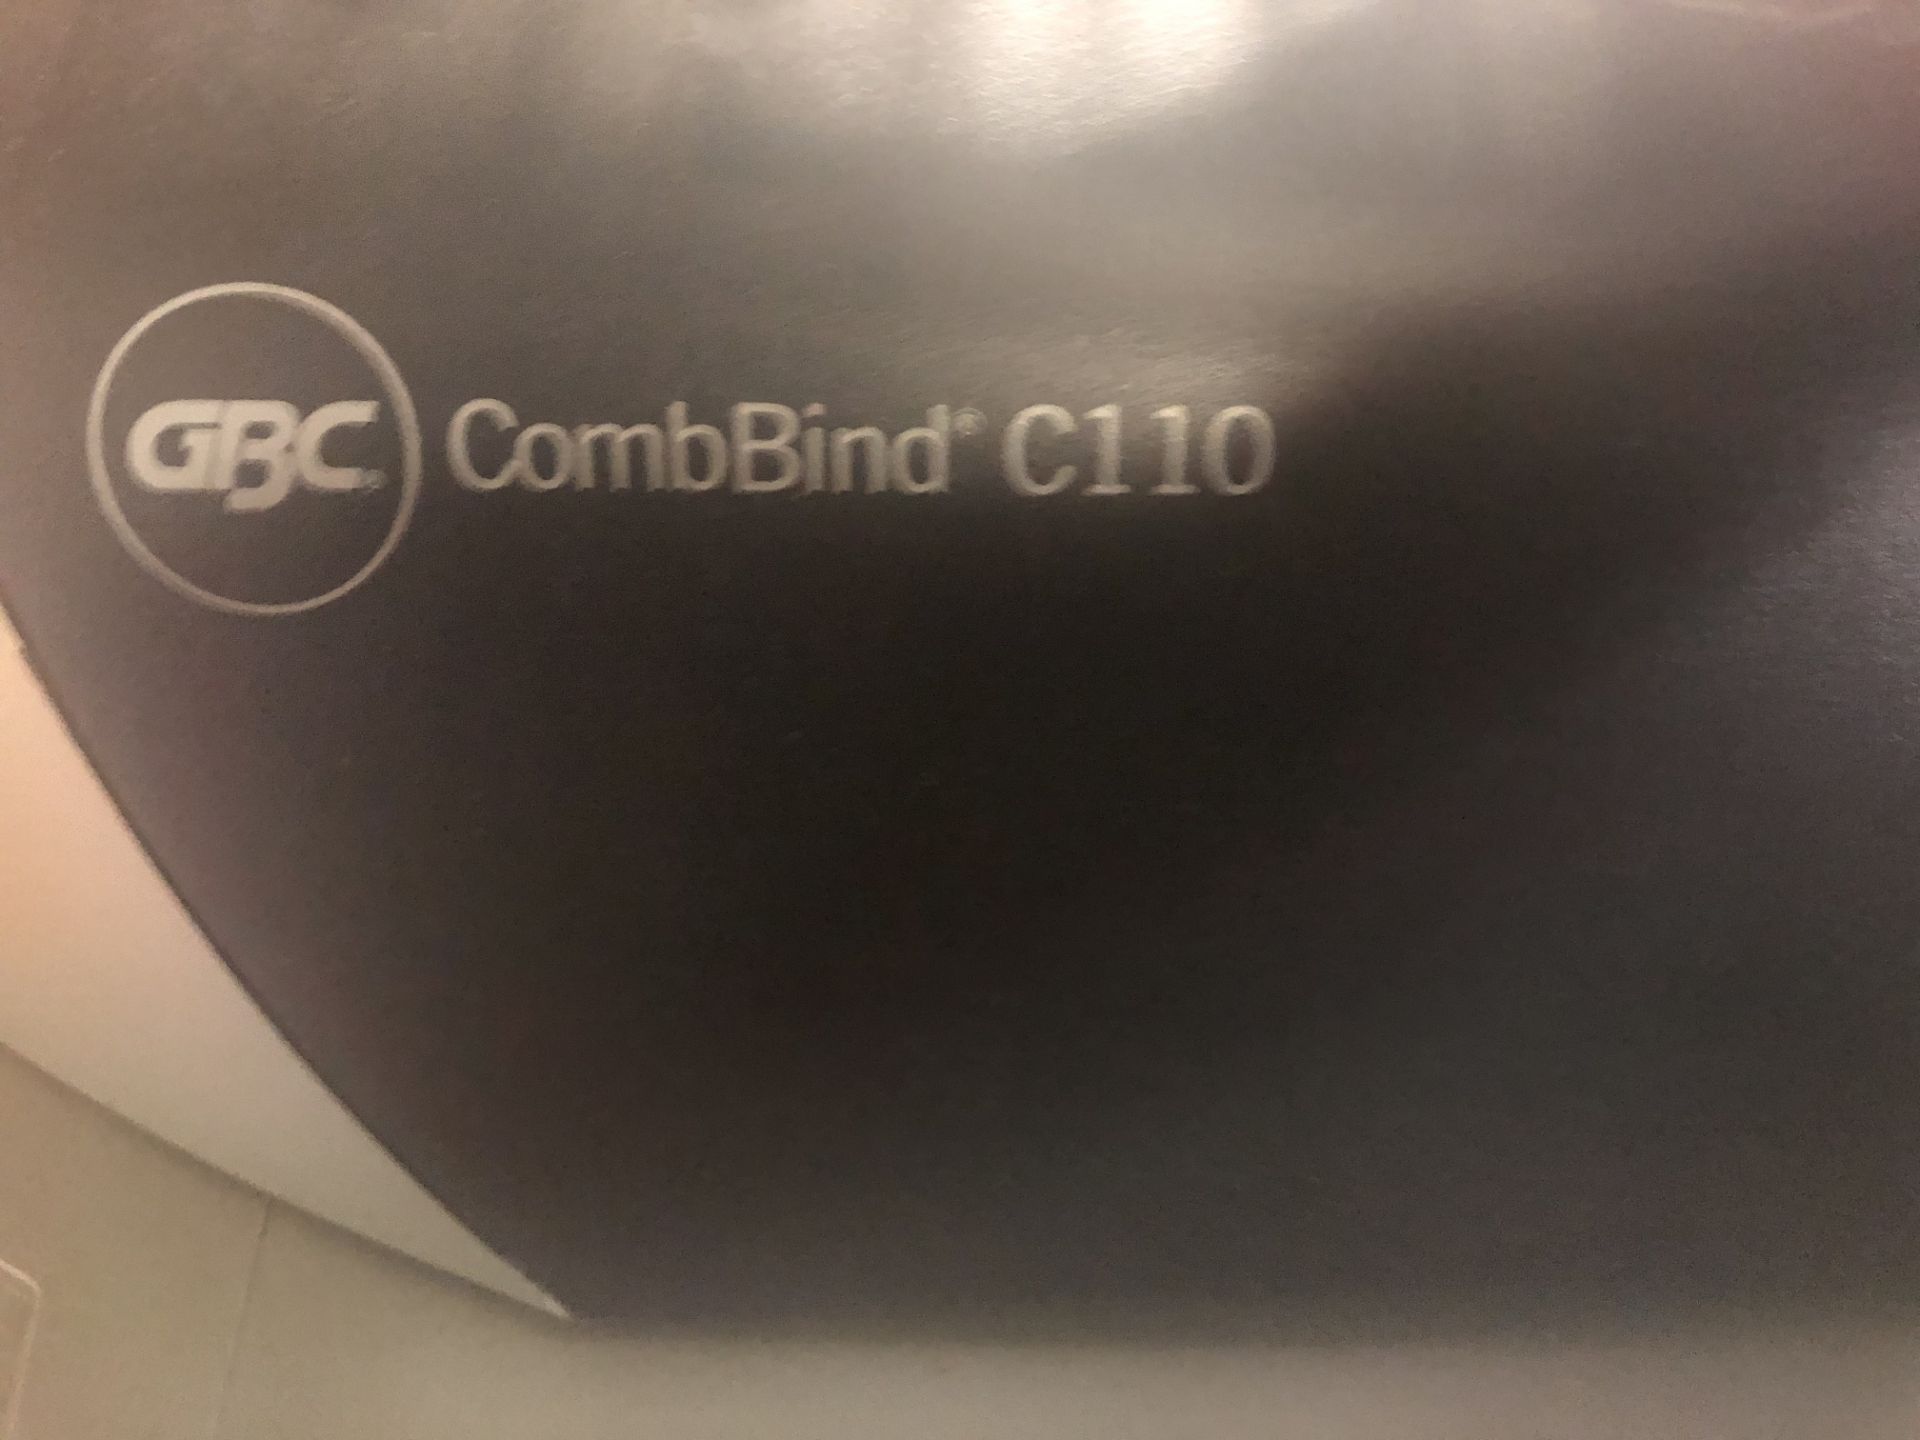 Comibind C110 Binding Machine - Image 2 of 3